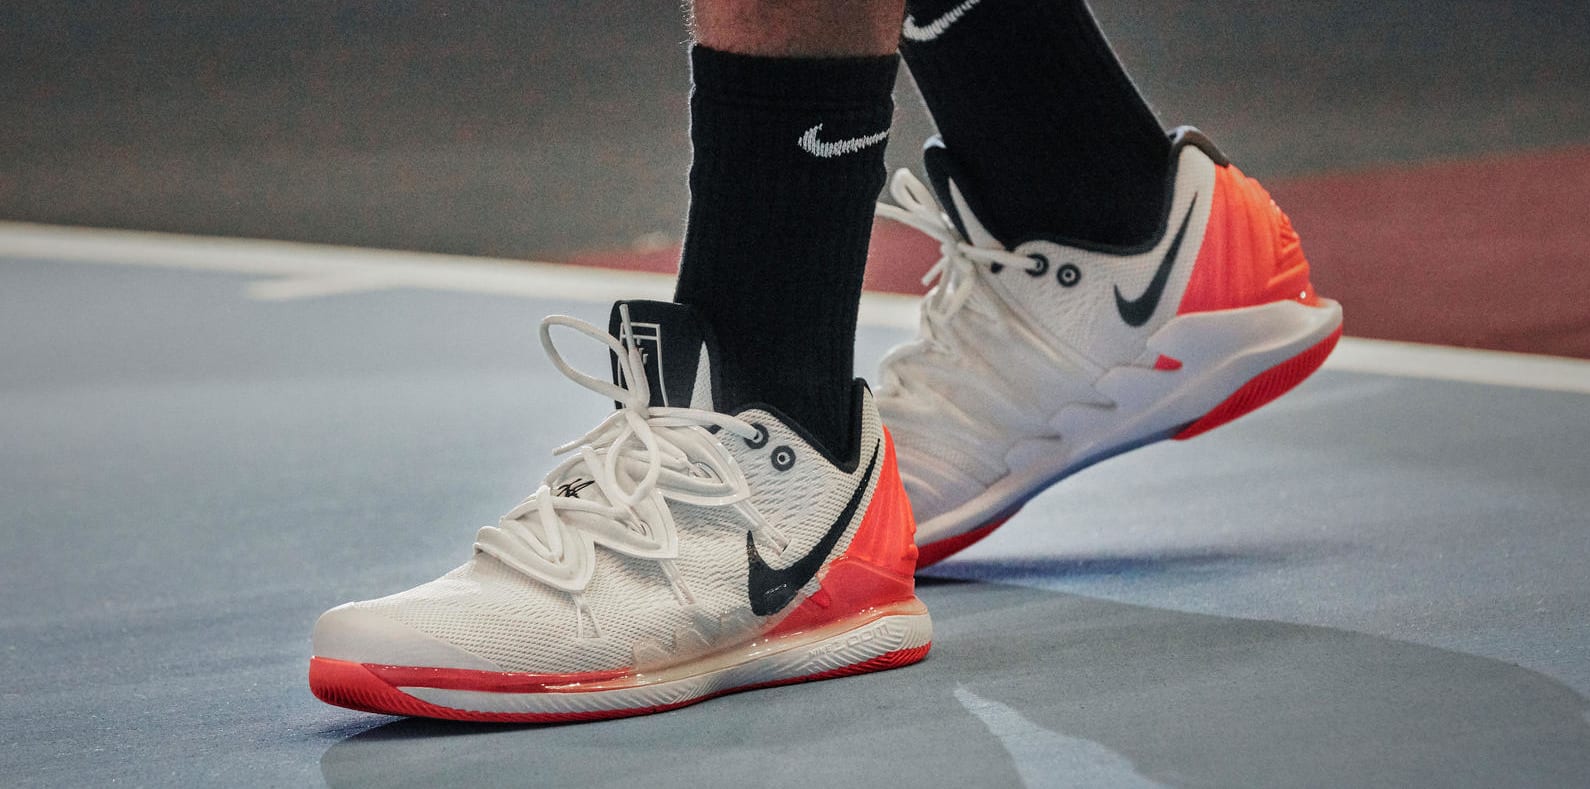 Nike Vapor X Kyrie 5 (On-Foot)